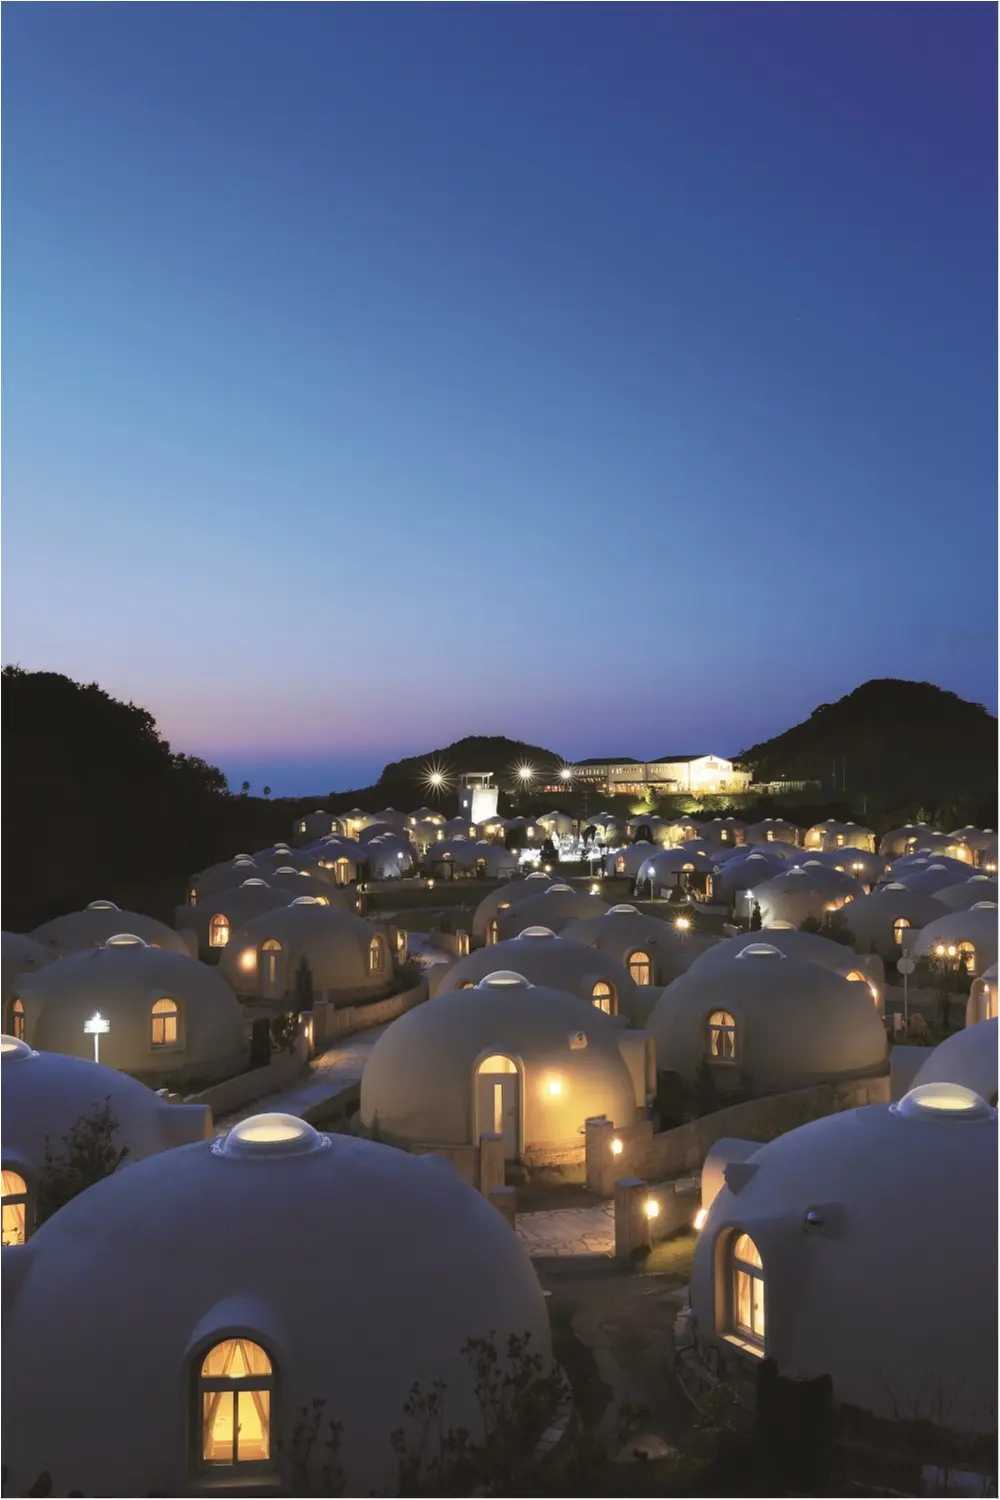 おしゃれ 可愛い 素敵 な宿で選ぶ女子旅 日本全国 映えてるホテル 10選 ライフスタイル最新情報 Daily More